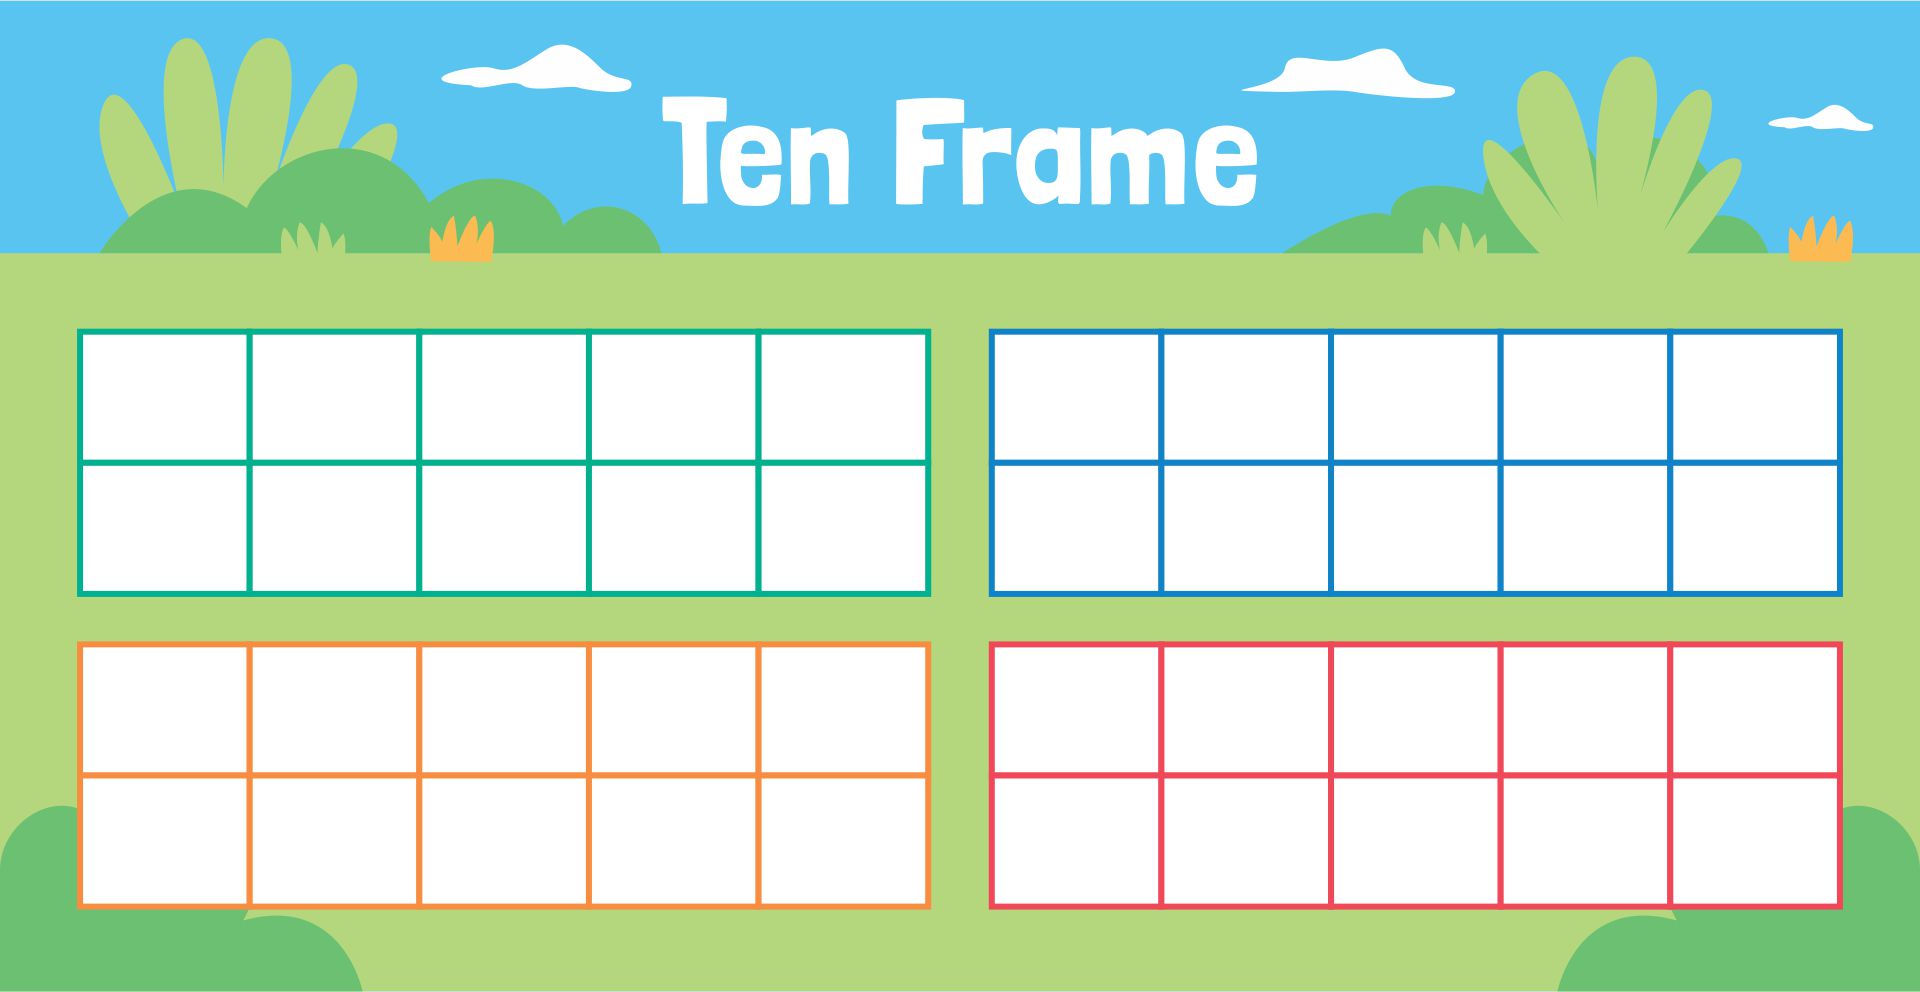 Ten Frame Template Printable